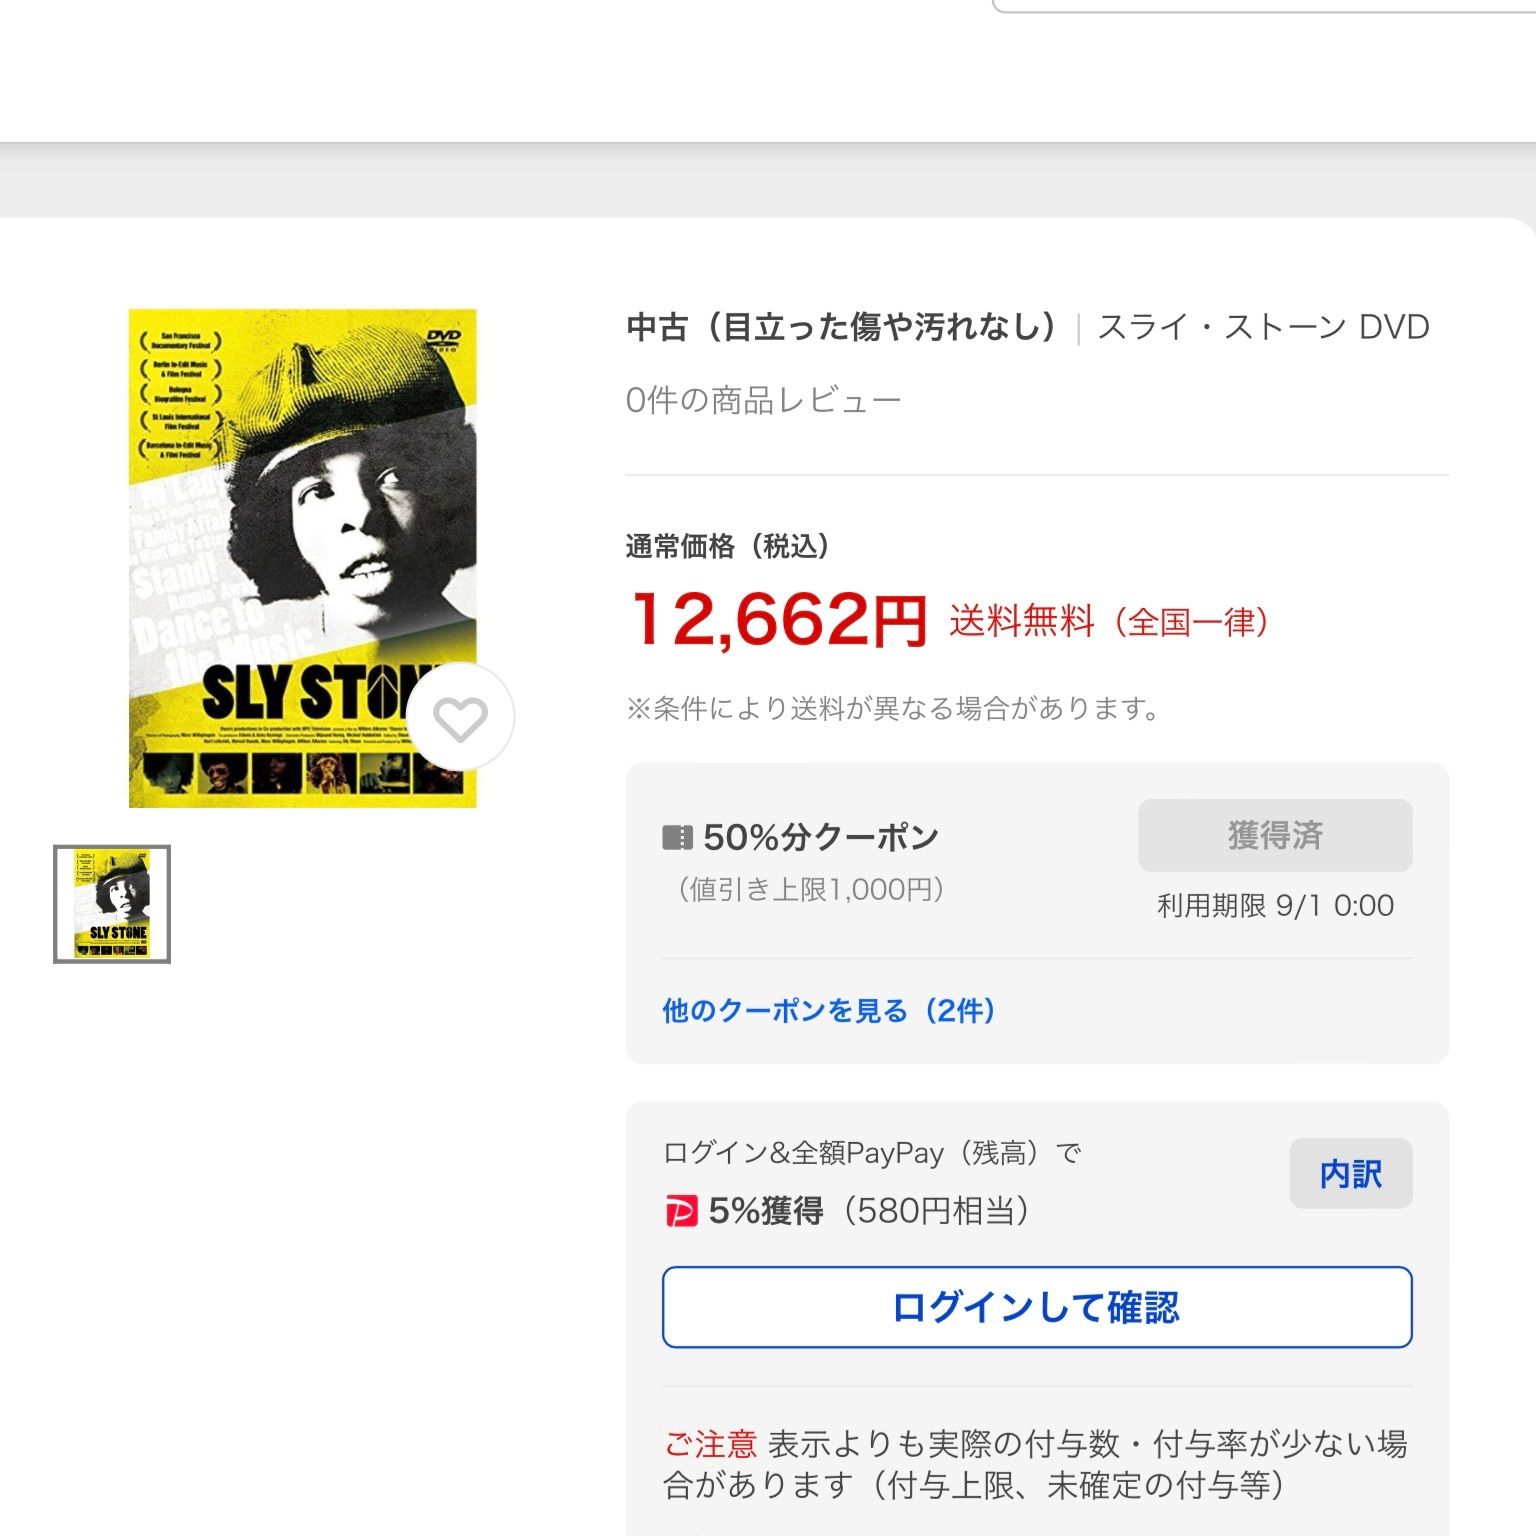 スライ・ストーン 【DVD】 SLY STONE 2015年 新品未開封貴重品 - メルカリ